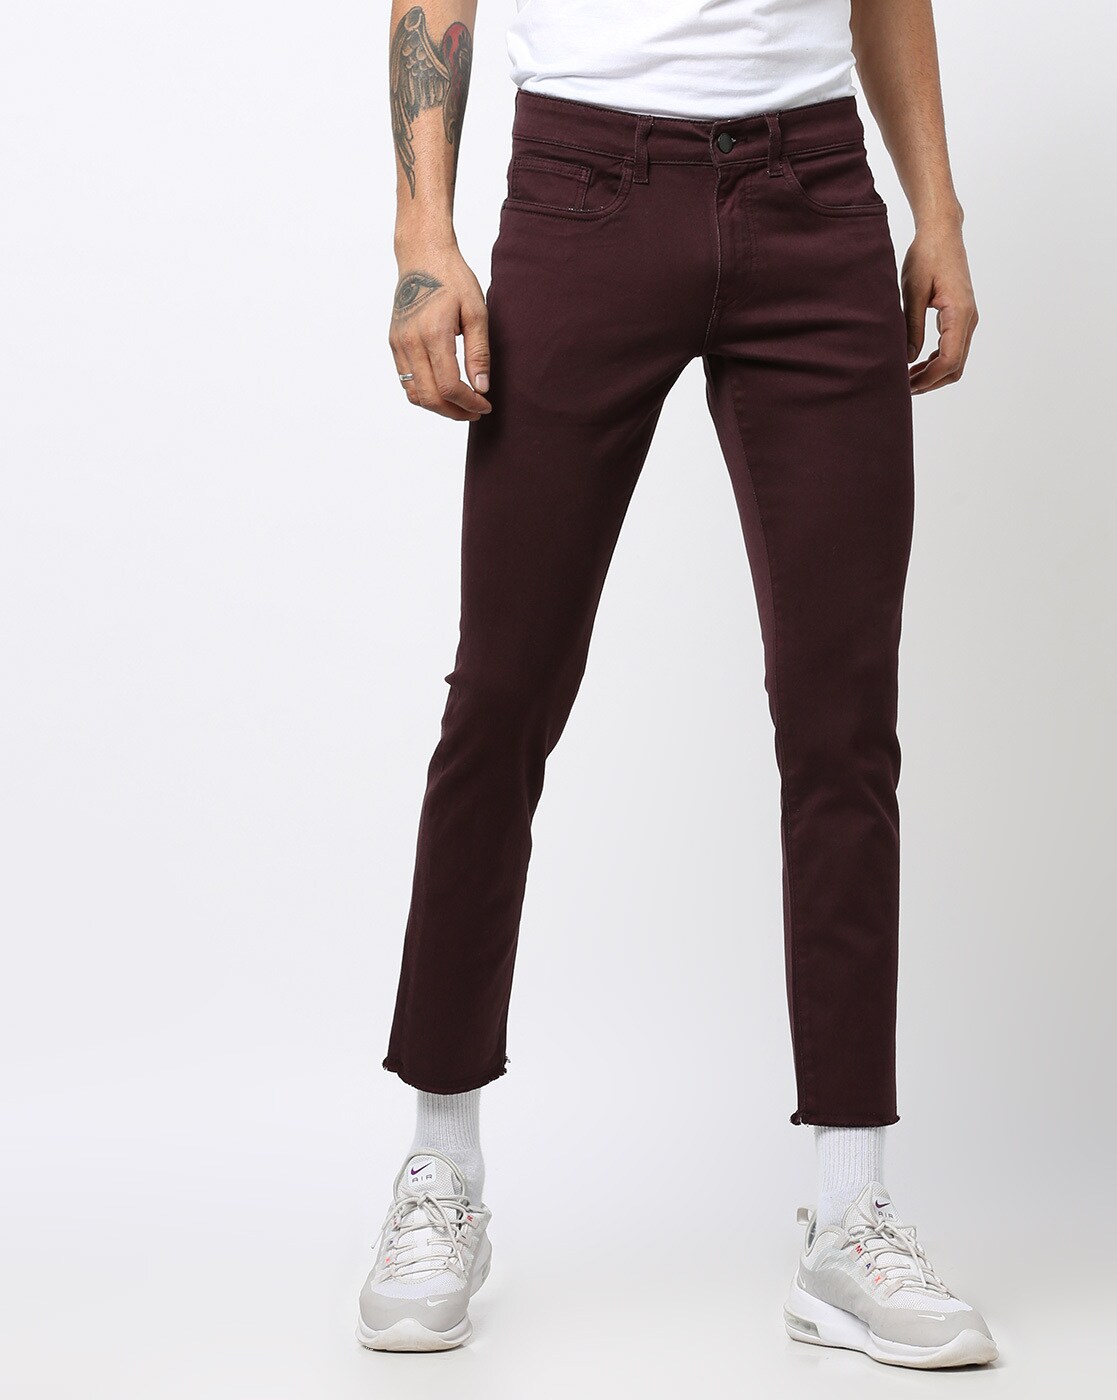 maroon skinny jeans mens